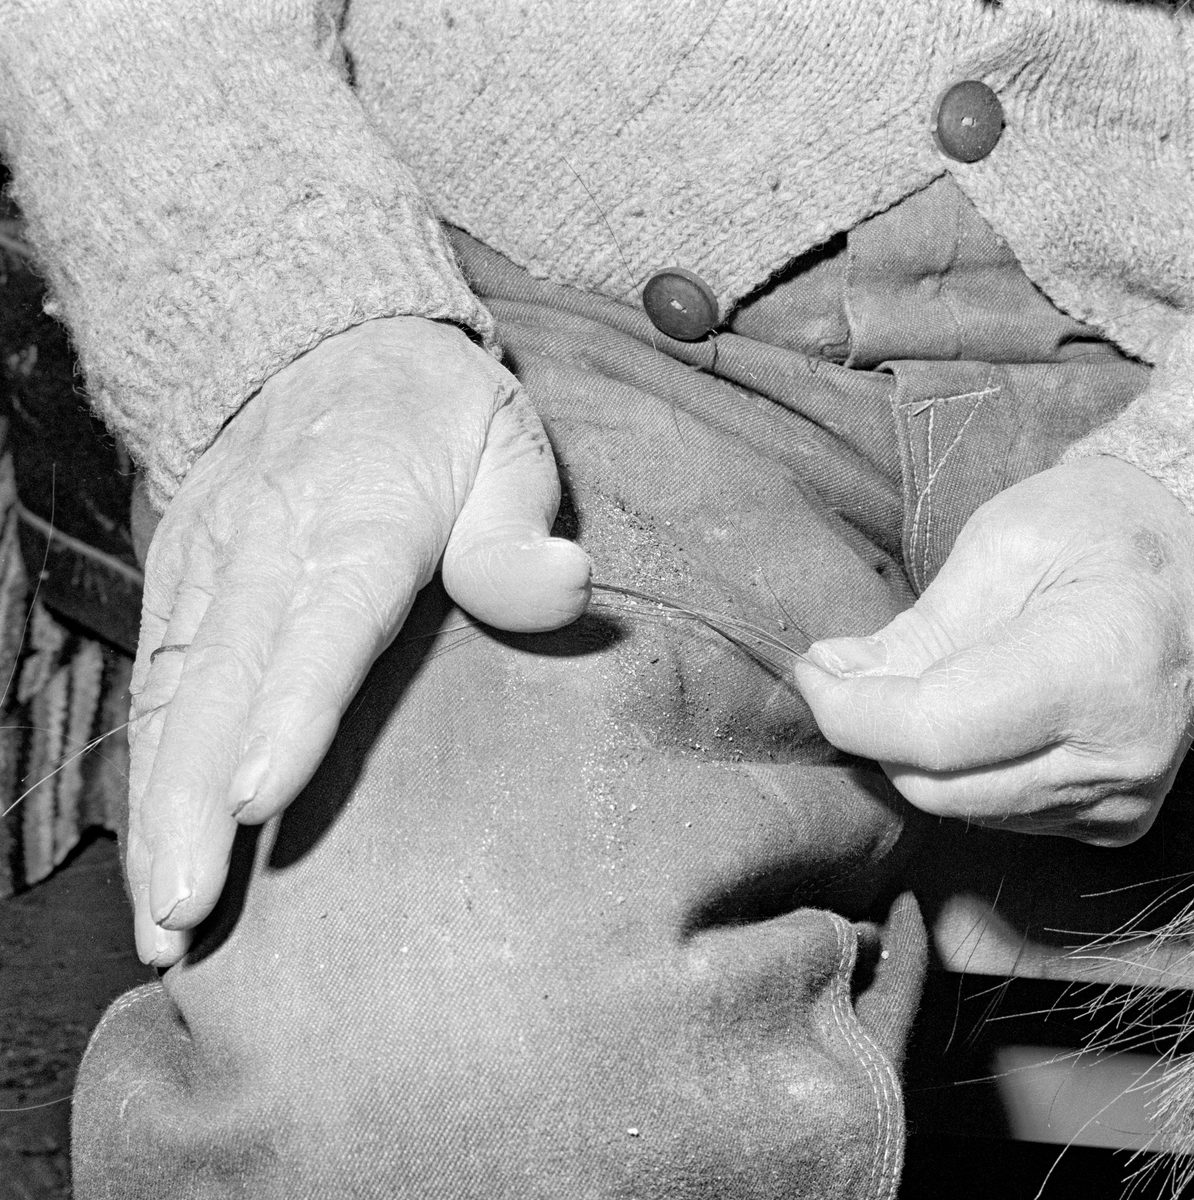 Tvinning av hestetaglsnare på Slettali i Verma i Møre og Romsdal i 1968.  Fotografiet viser en mann som holdt noen hår fra mana eller halen på en hest mellom pekefinger og tommel på ei hand mens han tvinnet dem ved skyve dem framover bukselåret ved hjelp av den andre handa. Snuing.